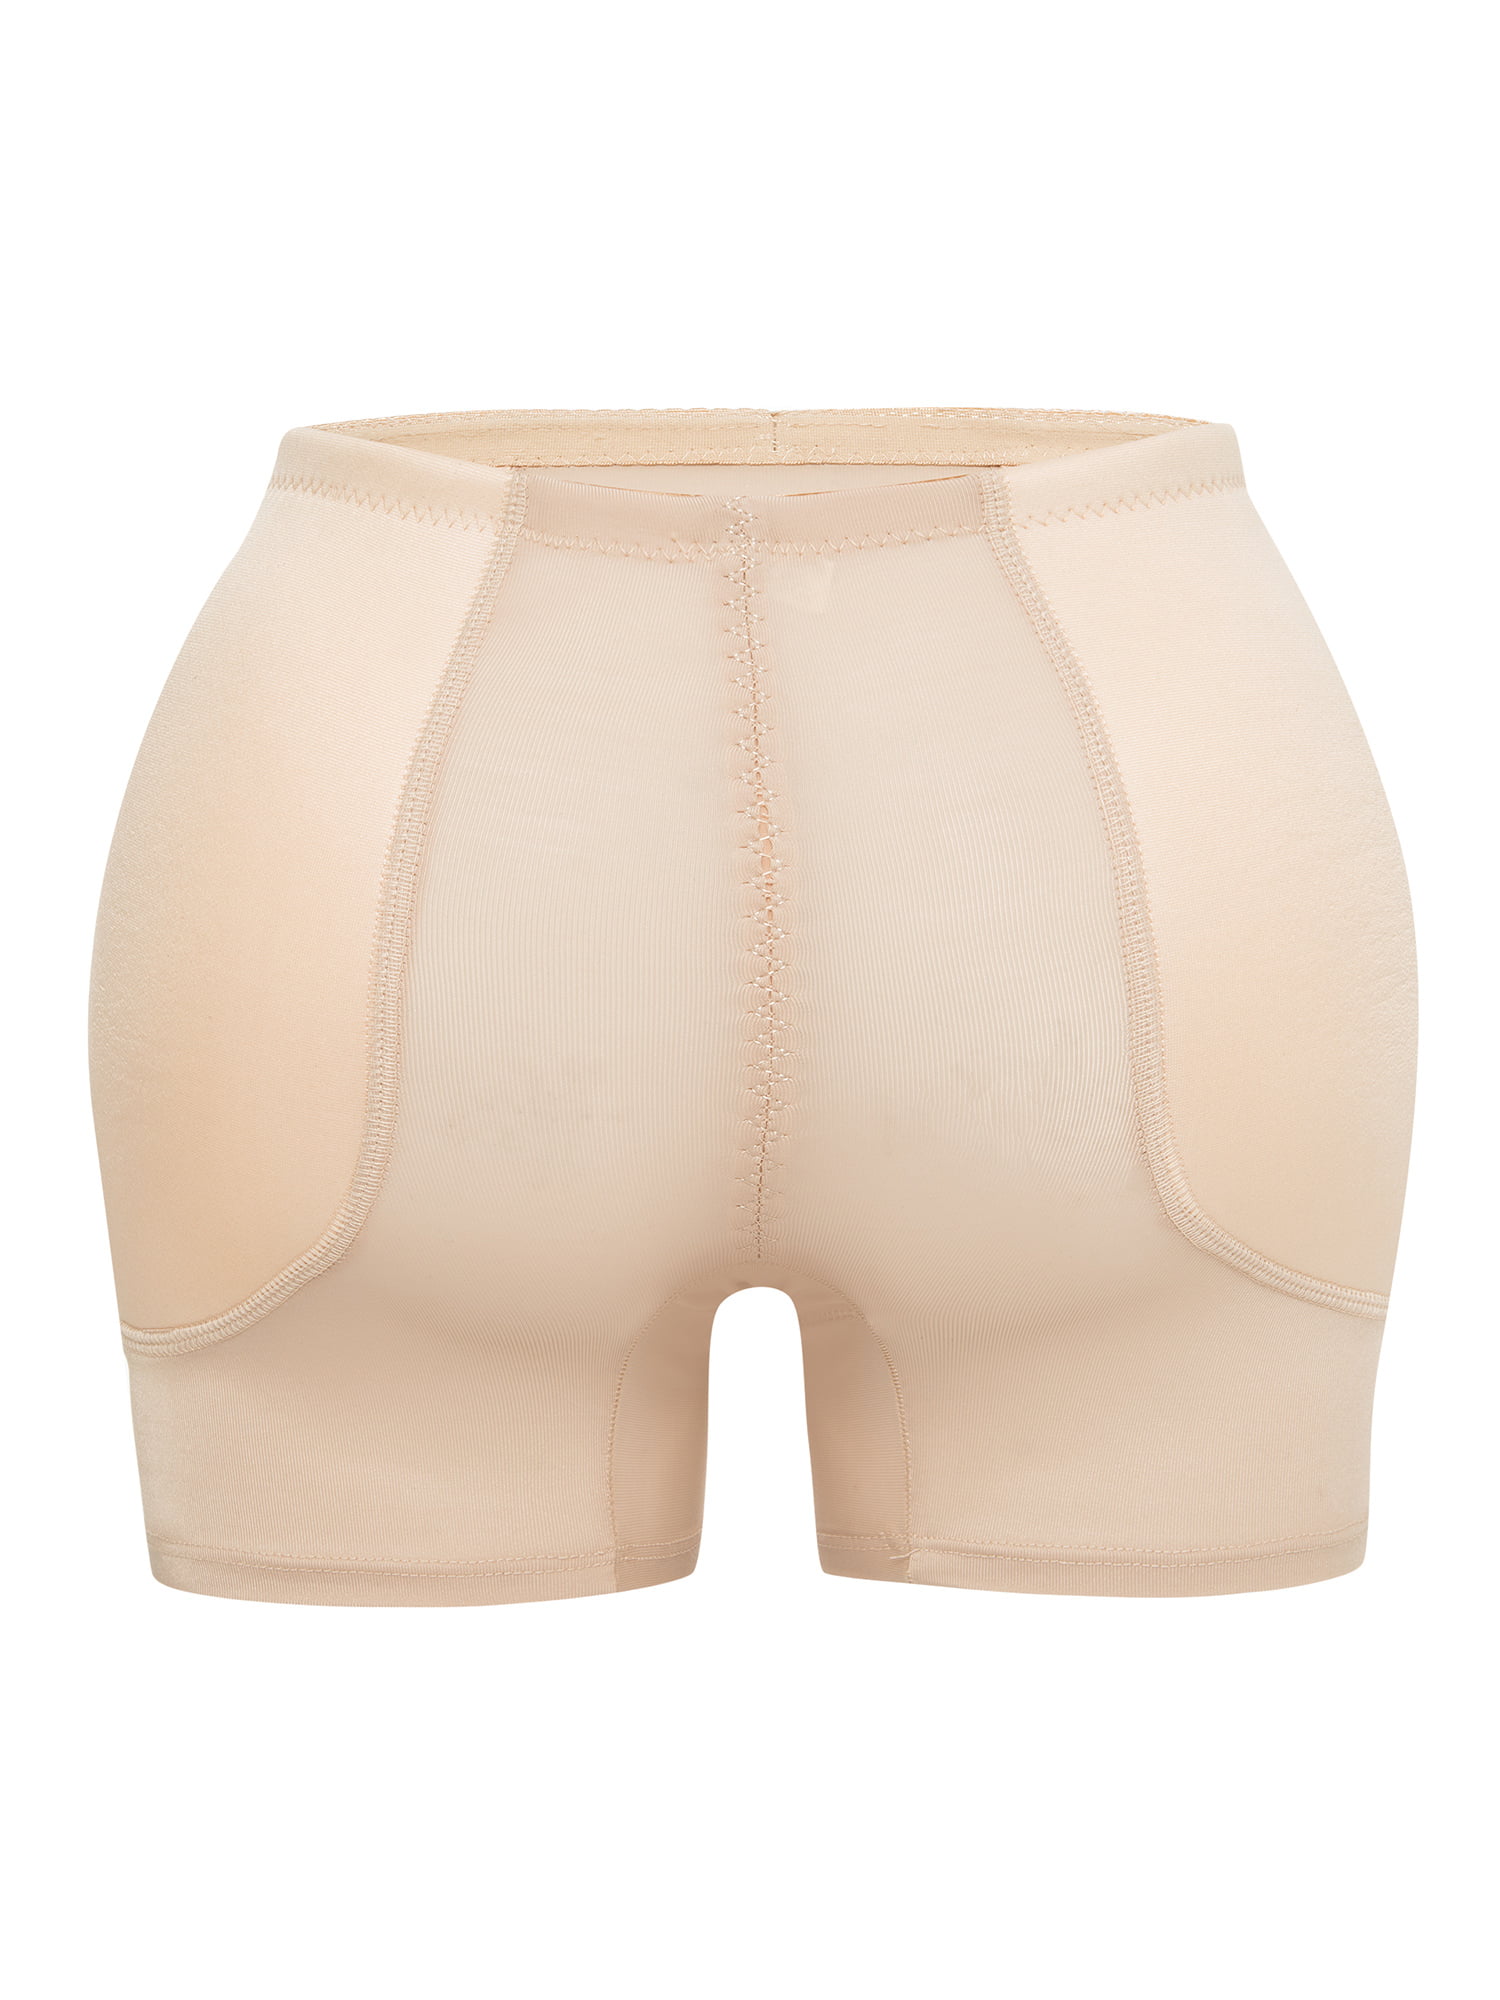 Womens Butt Lifter Hip Enhance Panties Butt And Hip Enhancer Underwear